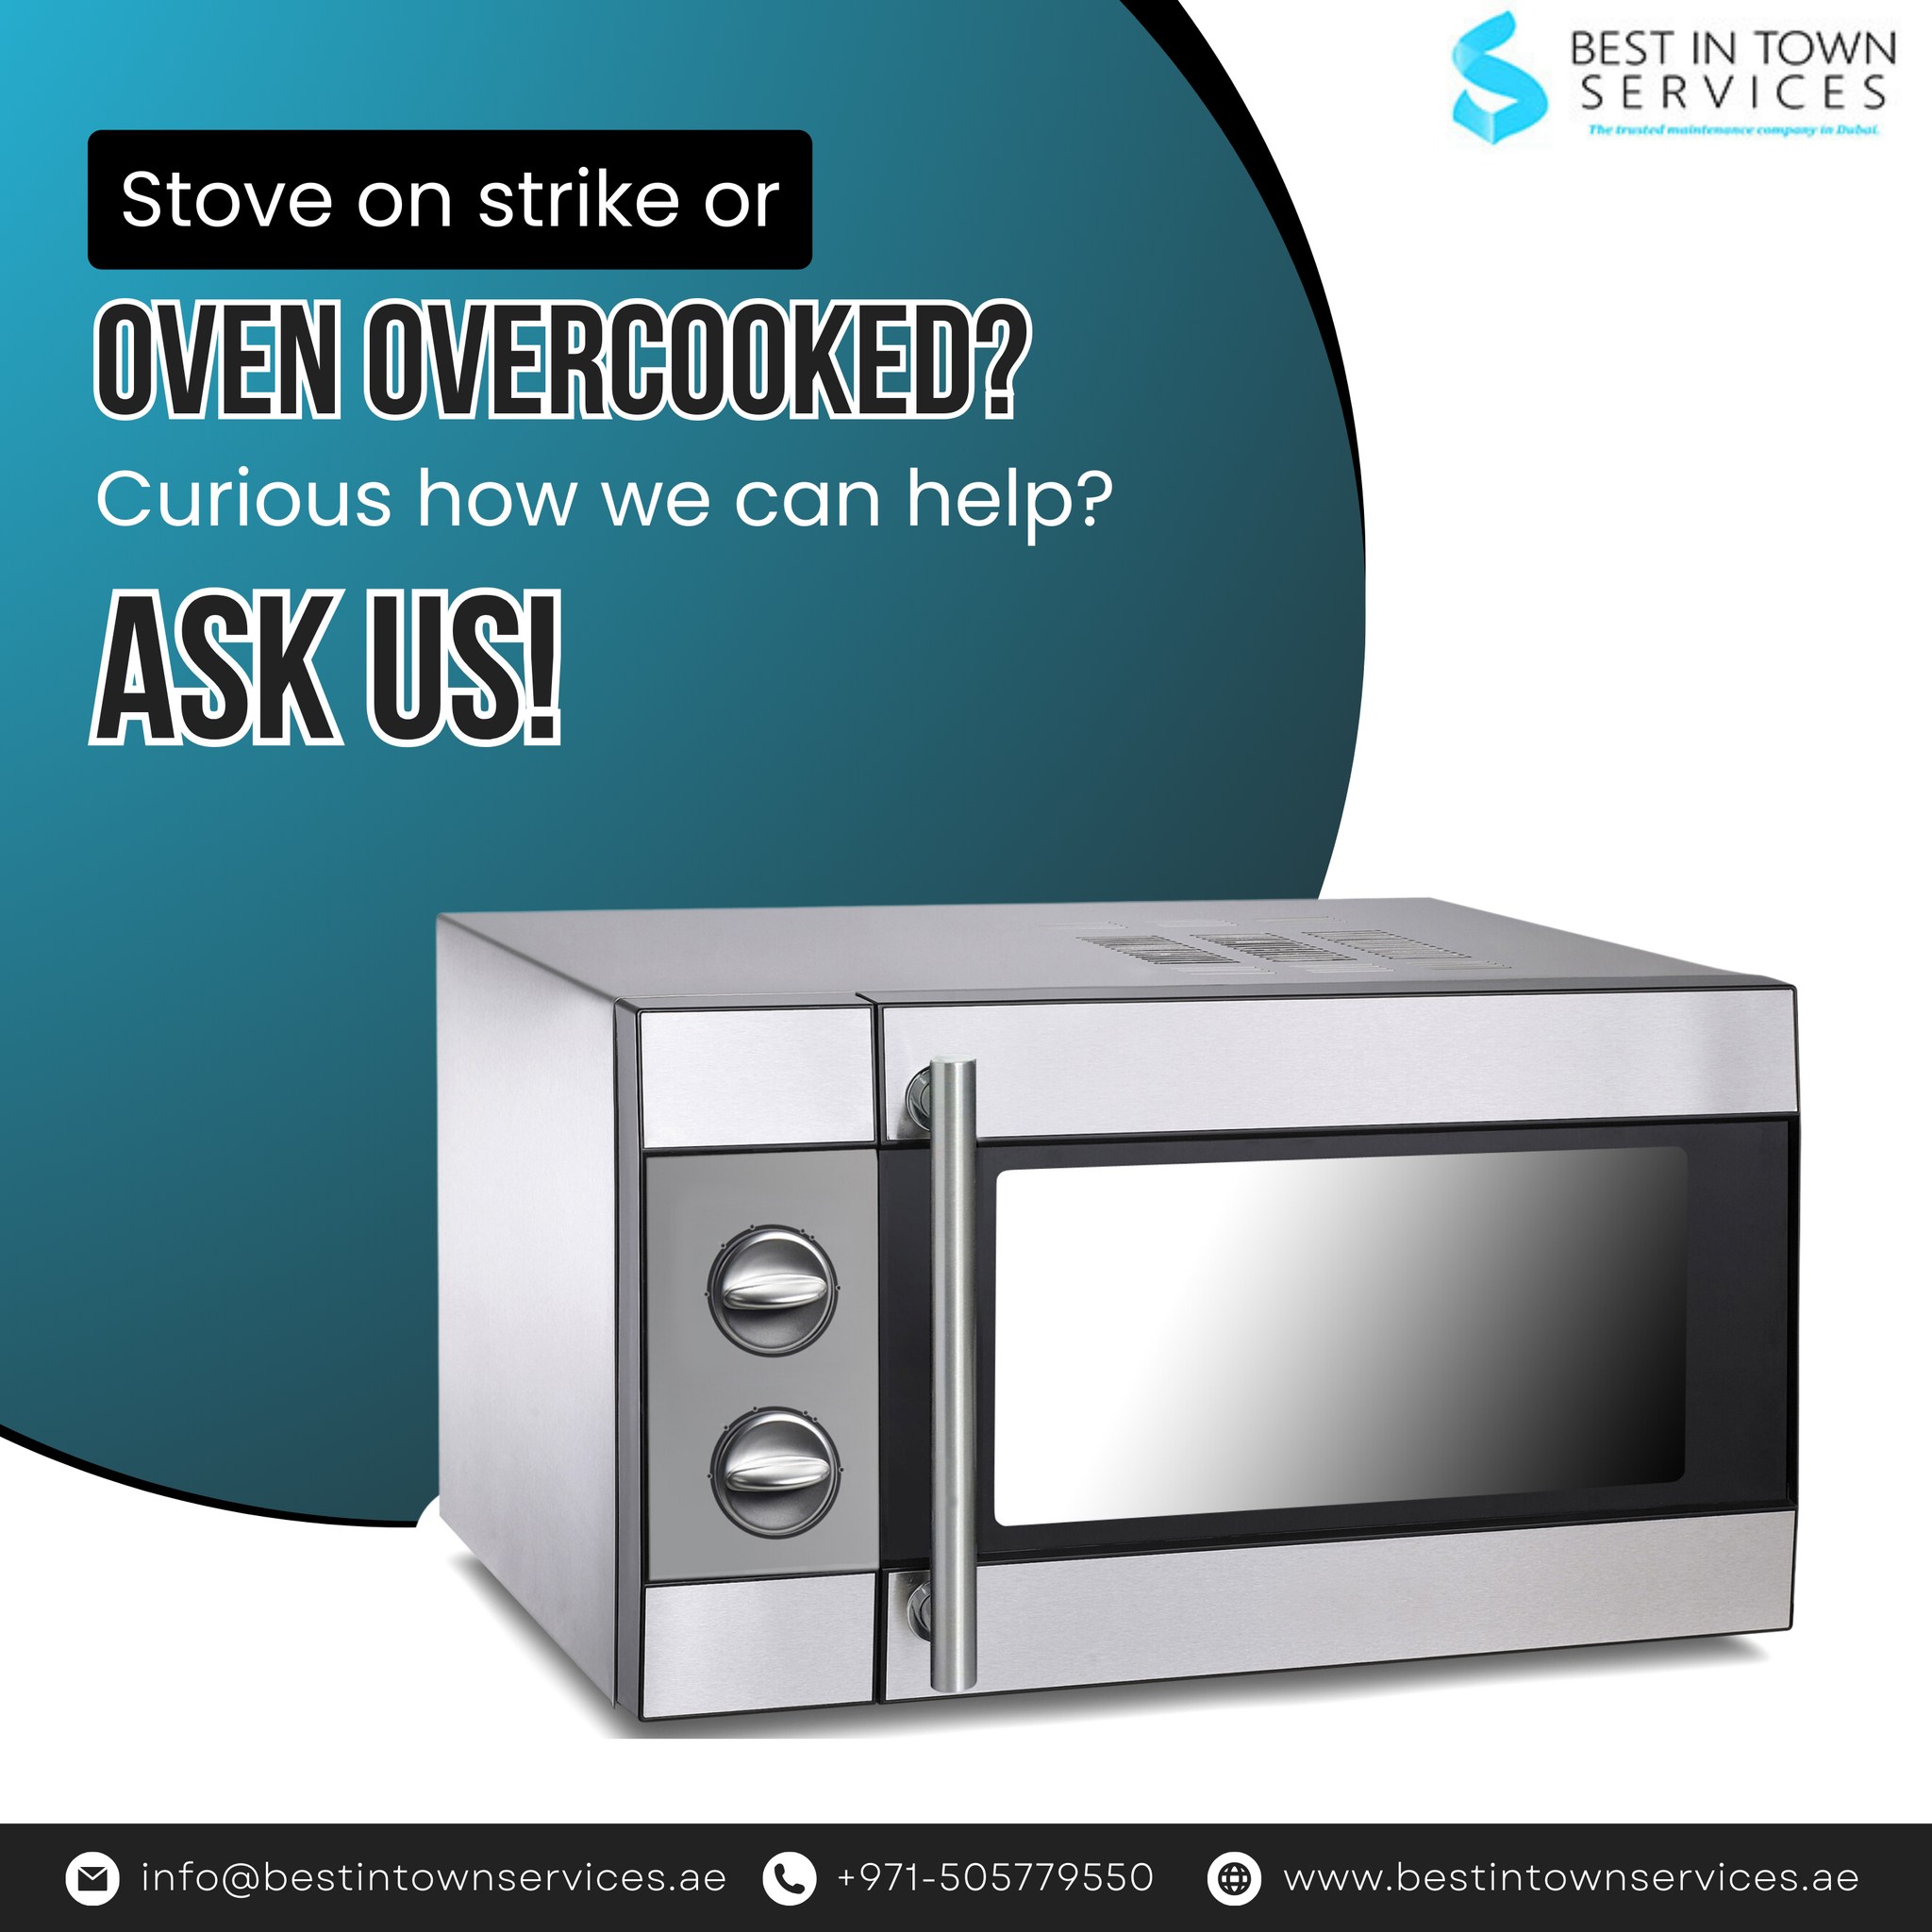 Microwave Oven Repair in Dubai -04-3382777